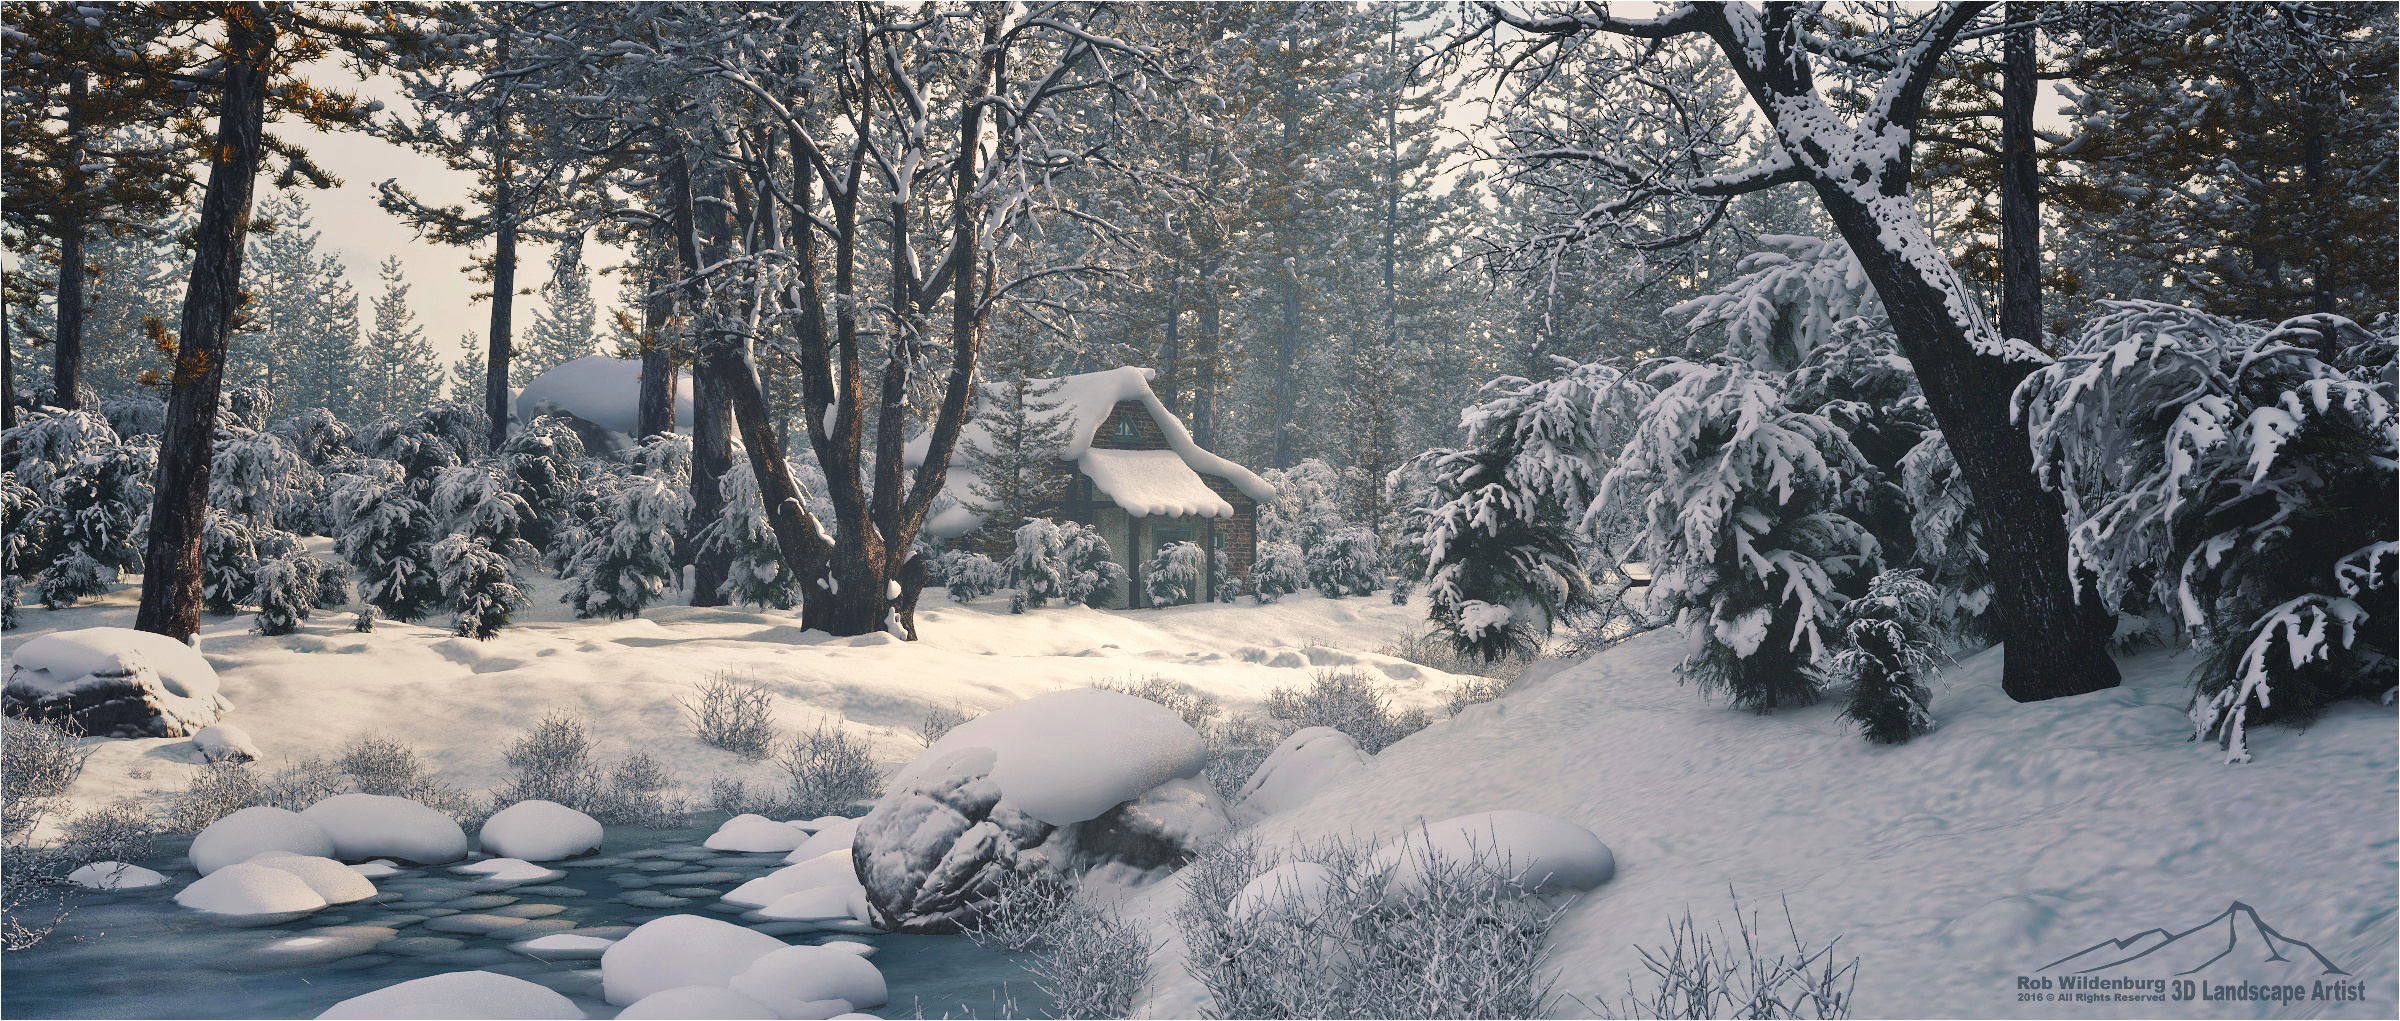 winter_scene_prt__2_by_3dlandscapeartist